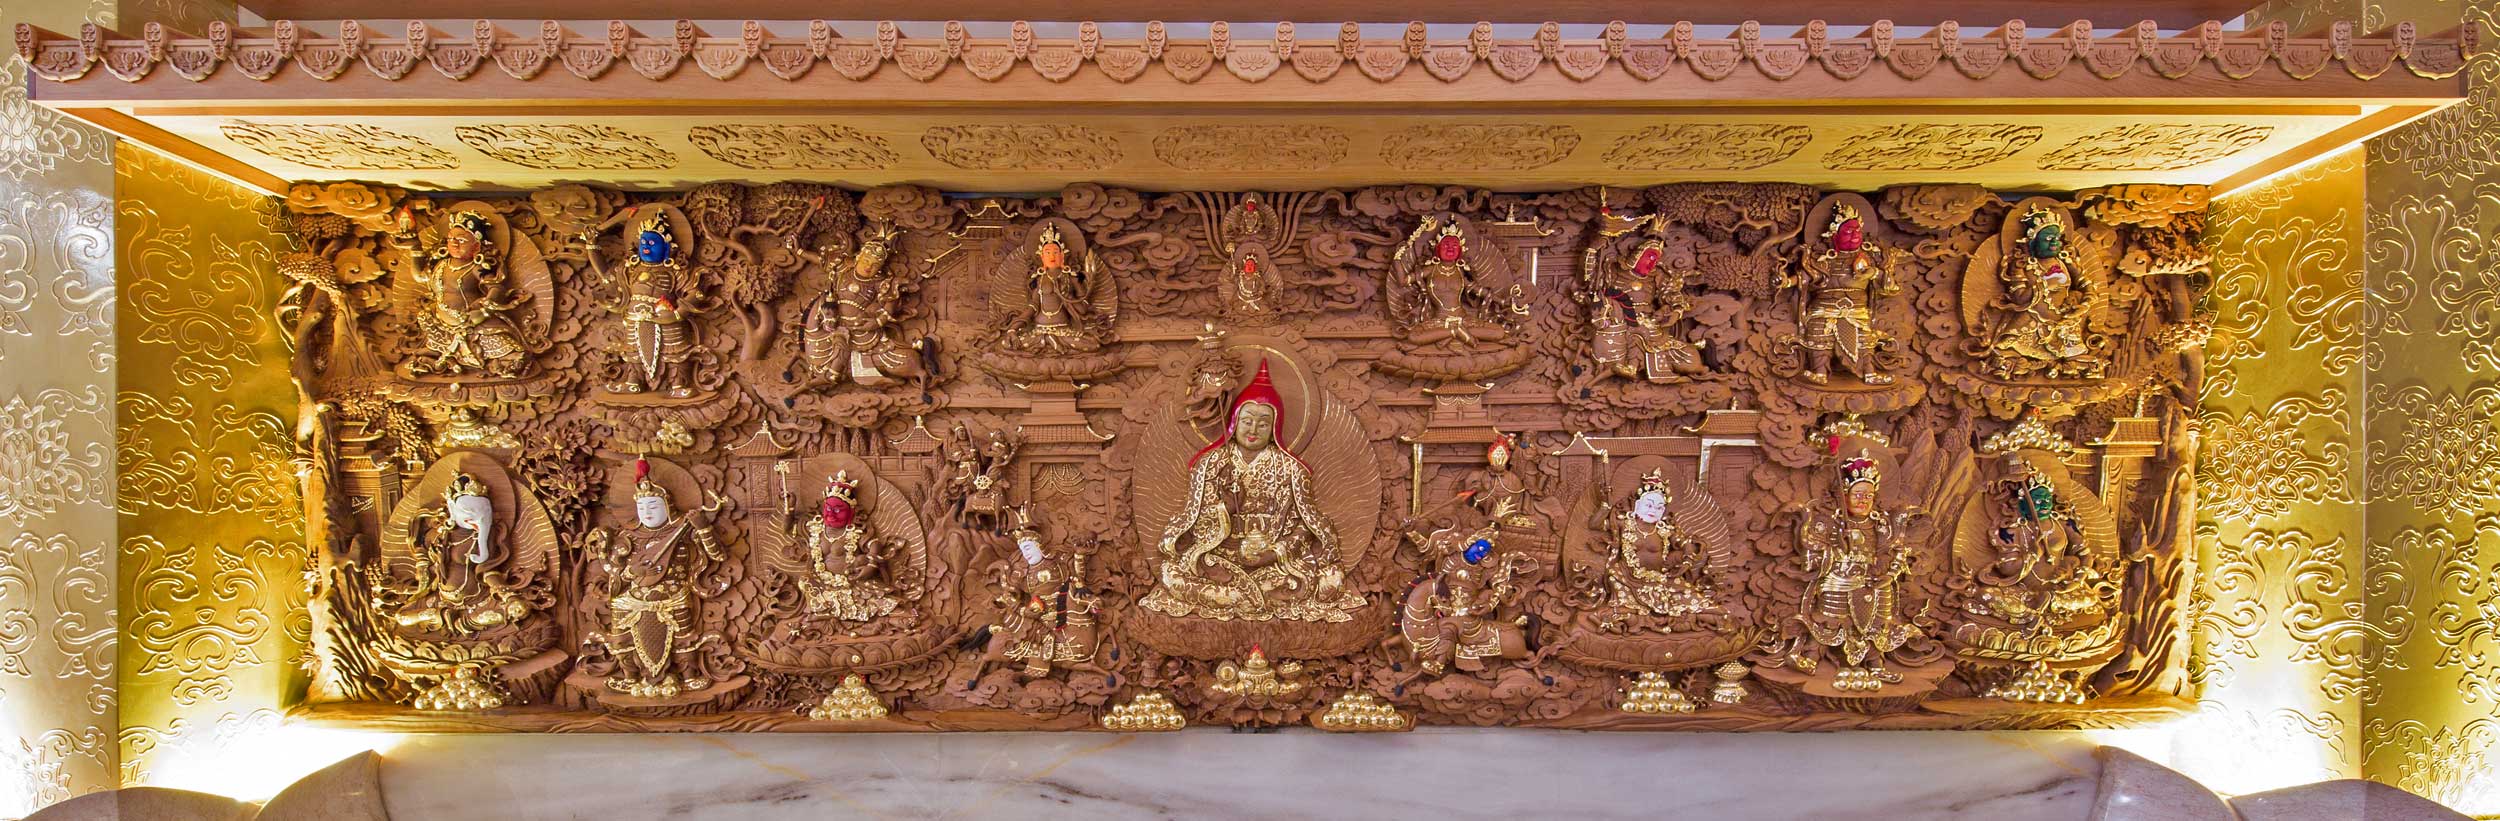 喇嘛諾拉木雕藝術